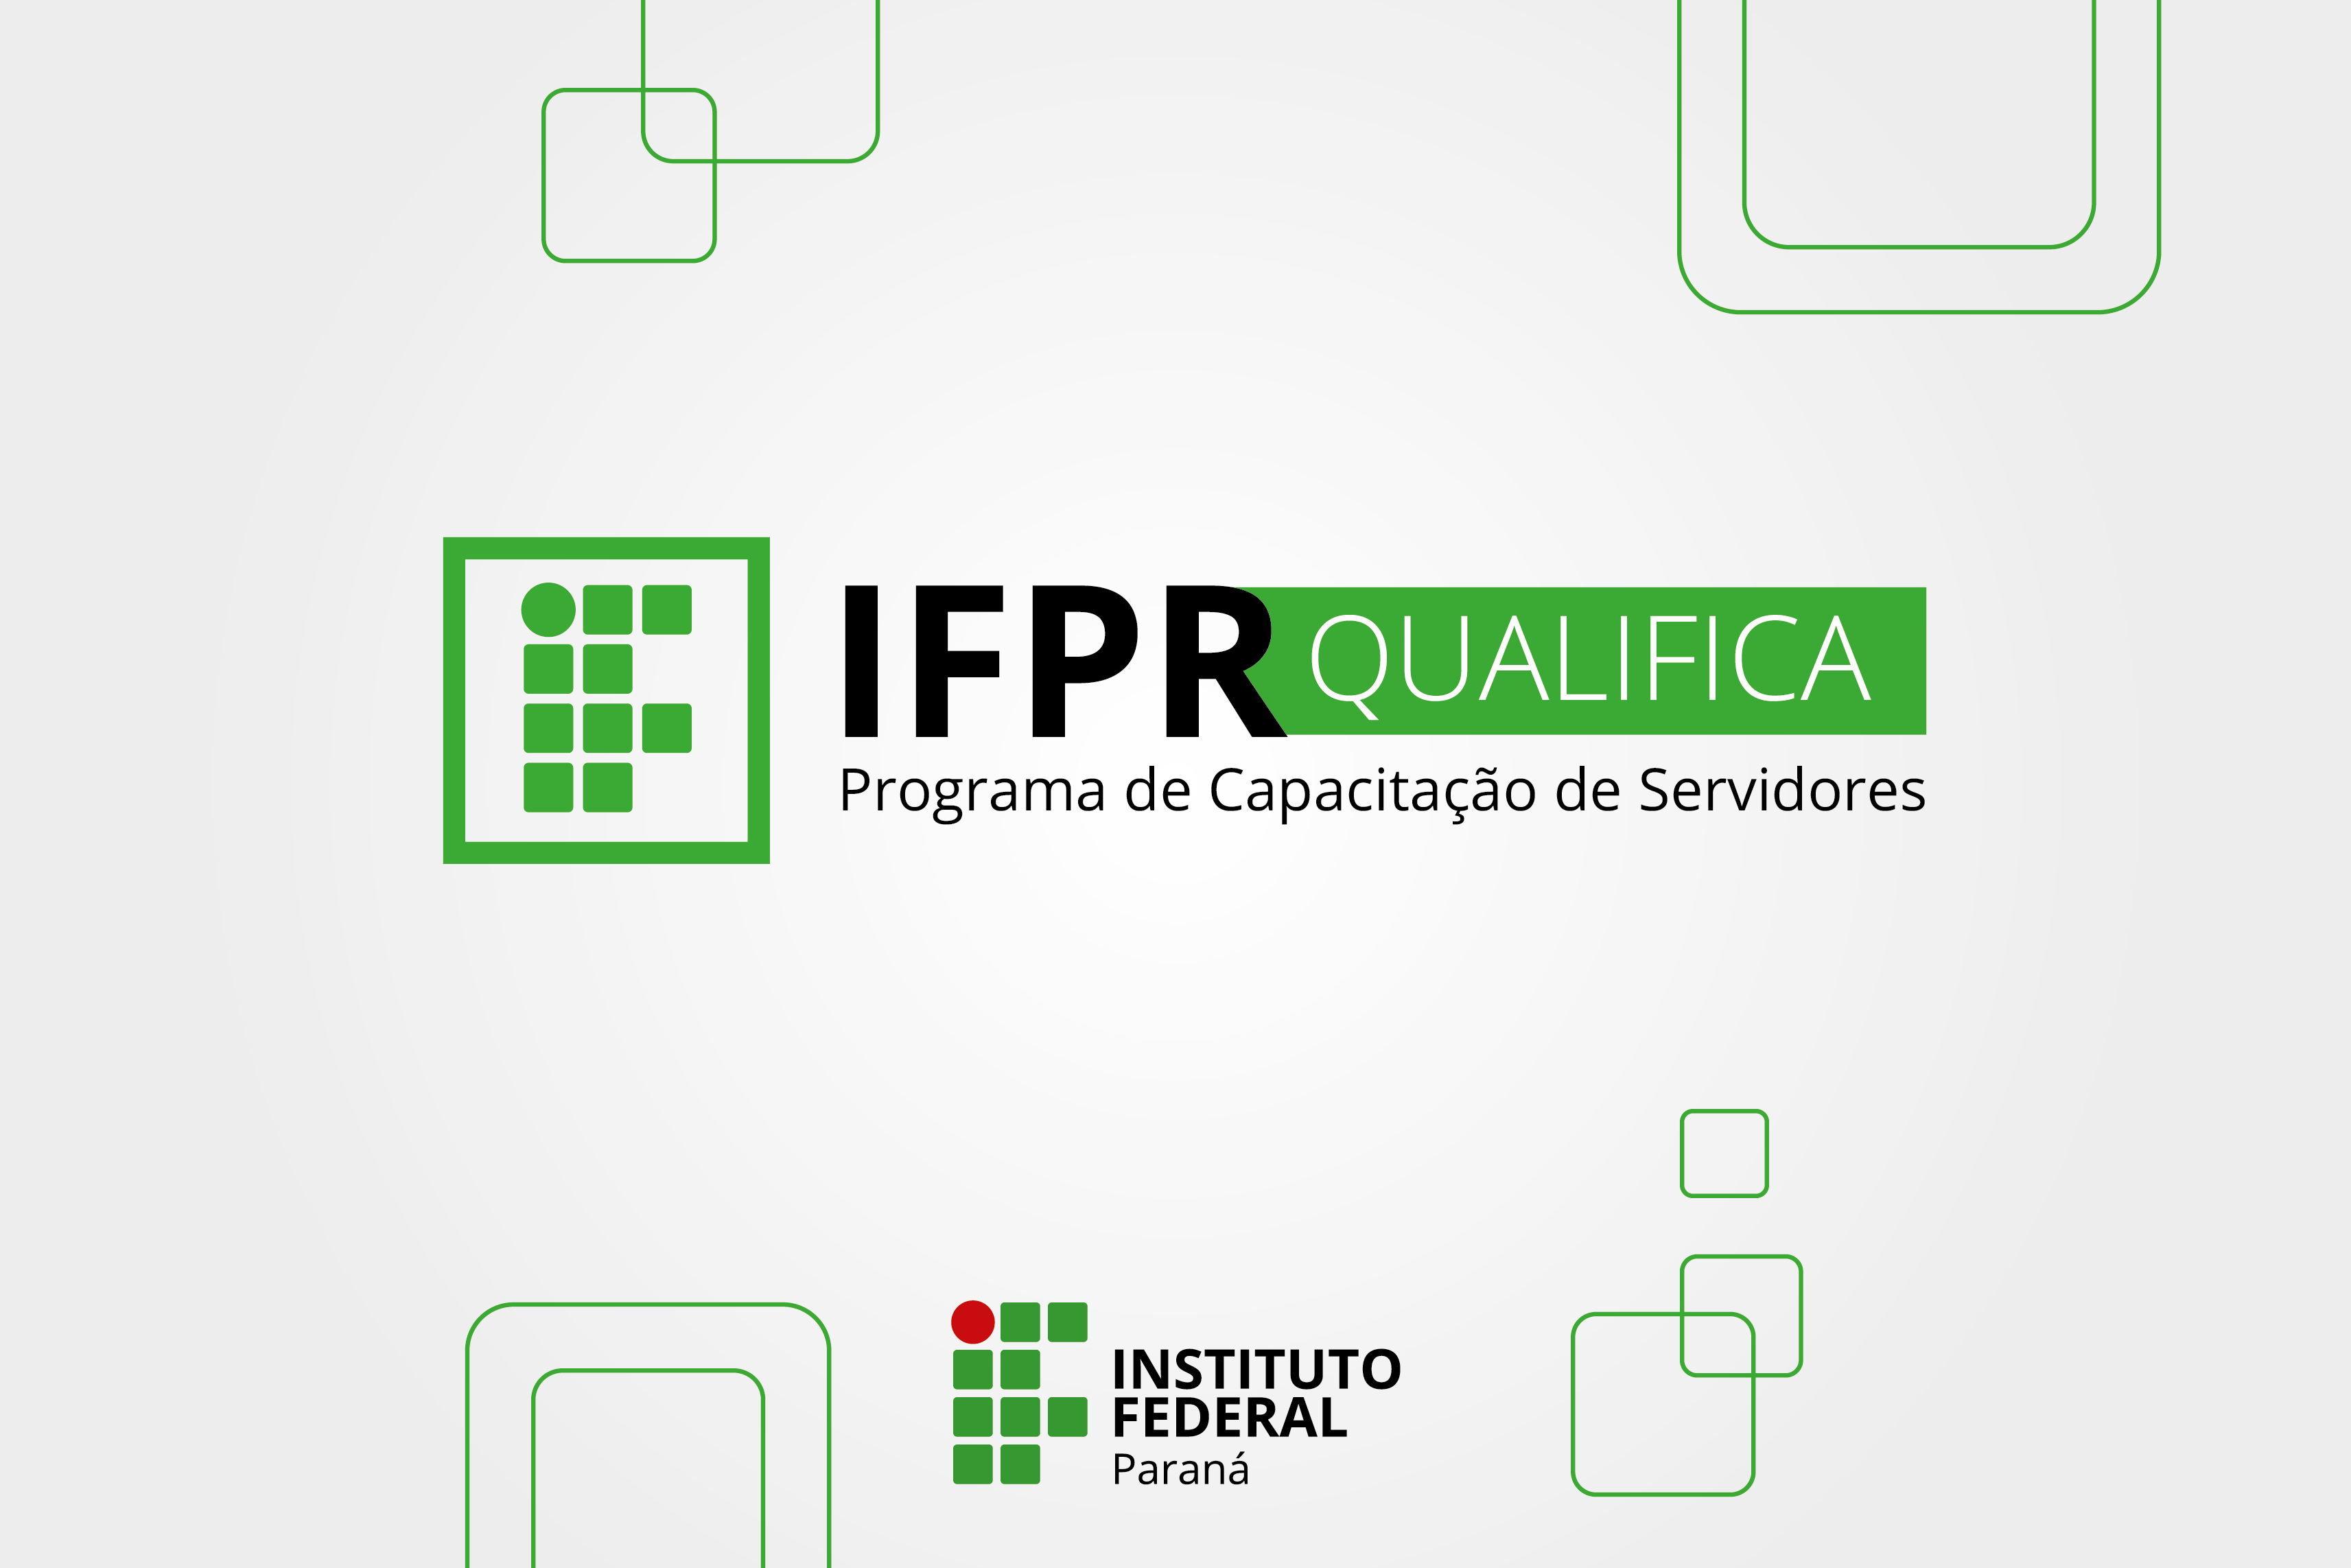 "IFPR Qualifica"